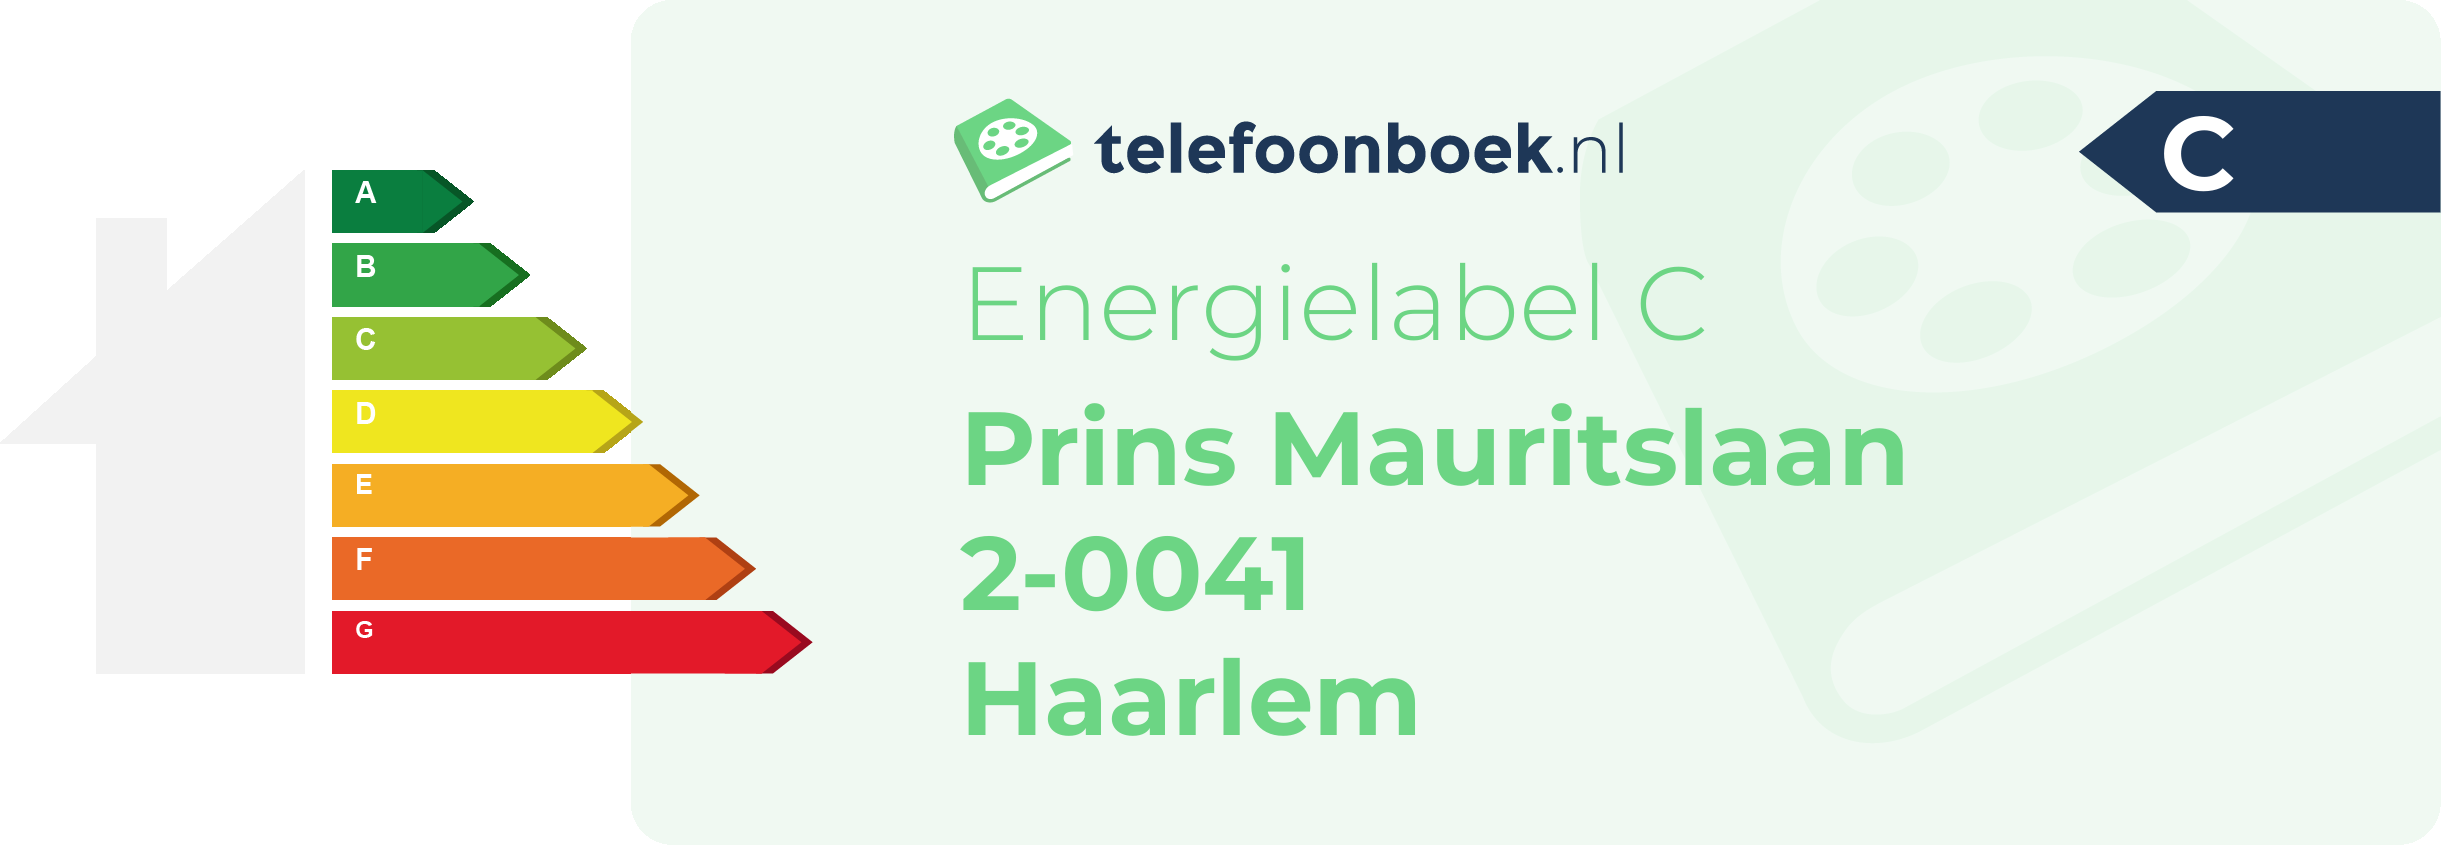 Energielabel Prins Mauritslaan 2-0041 Haarlem